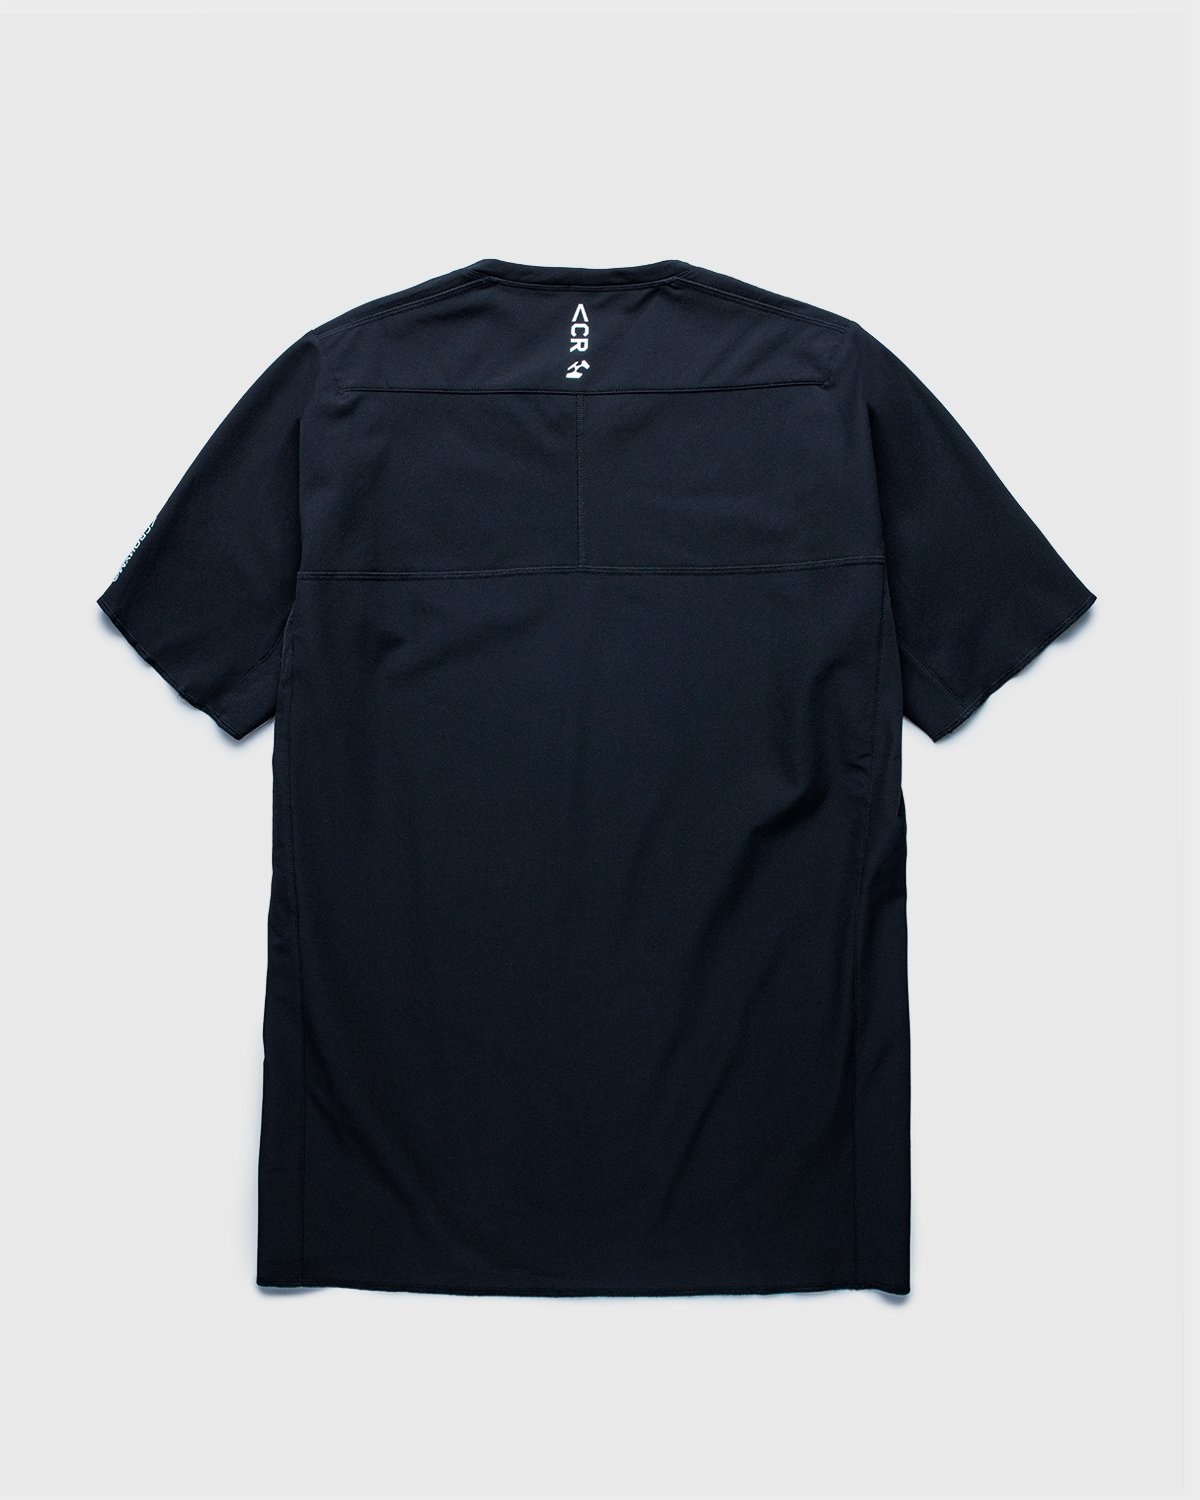 ACRONYM – S24-DS Short Sleeve Black - T-Shirts - Black - Image 2